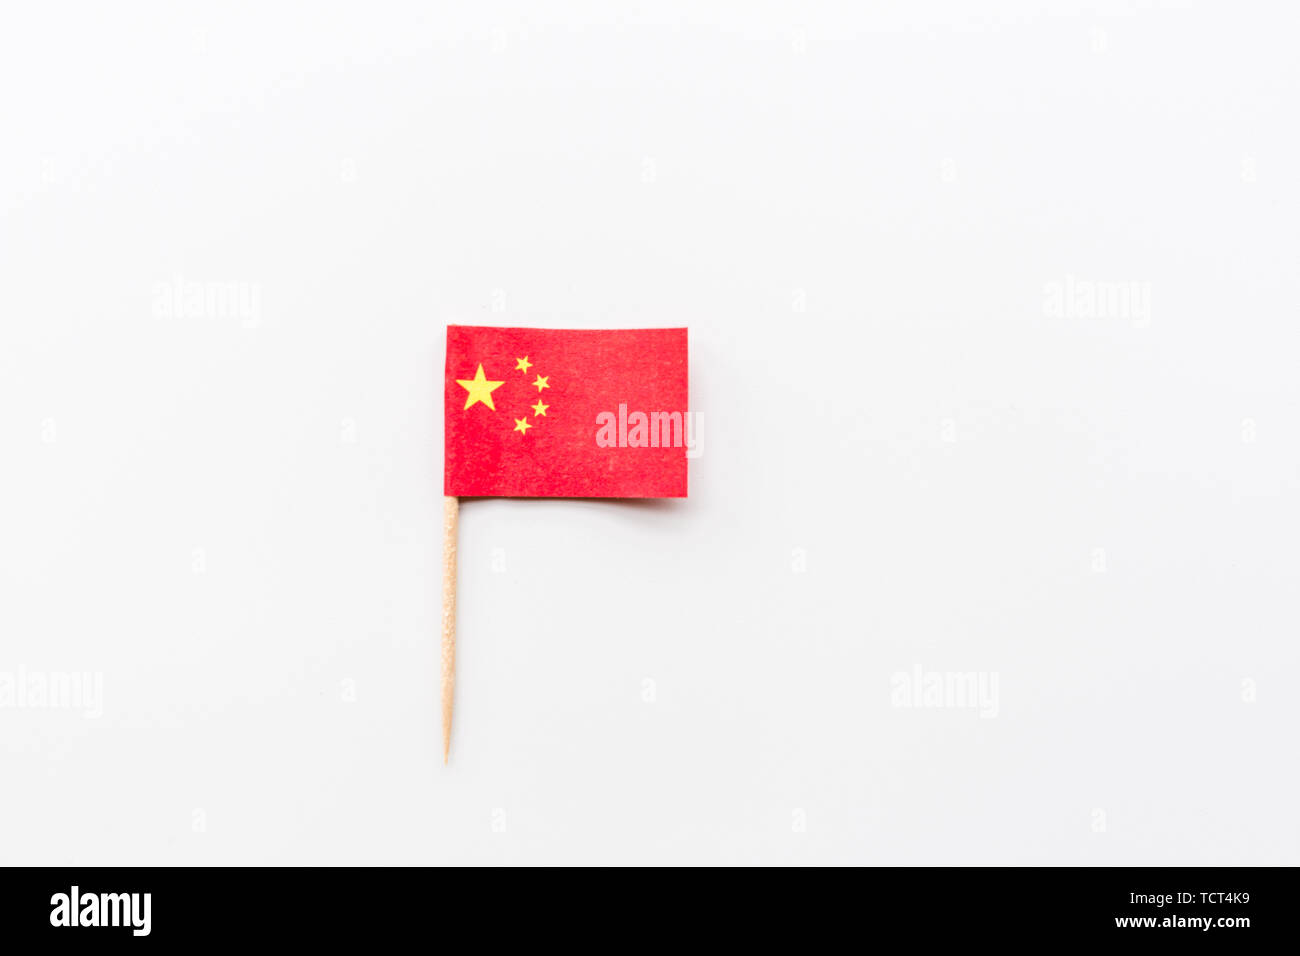 Mini drapeau chinois couché sur fond blanc. Jour du drapeau national de la Chine, Télévision Fond Concept Style laïcs, immersive Banque D'Images